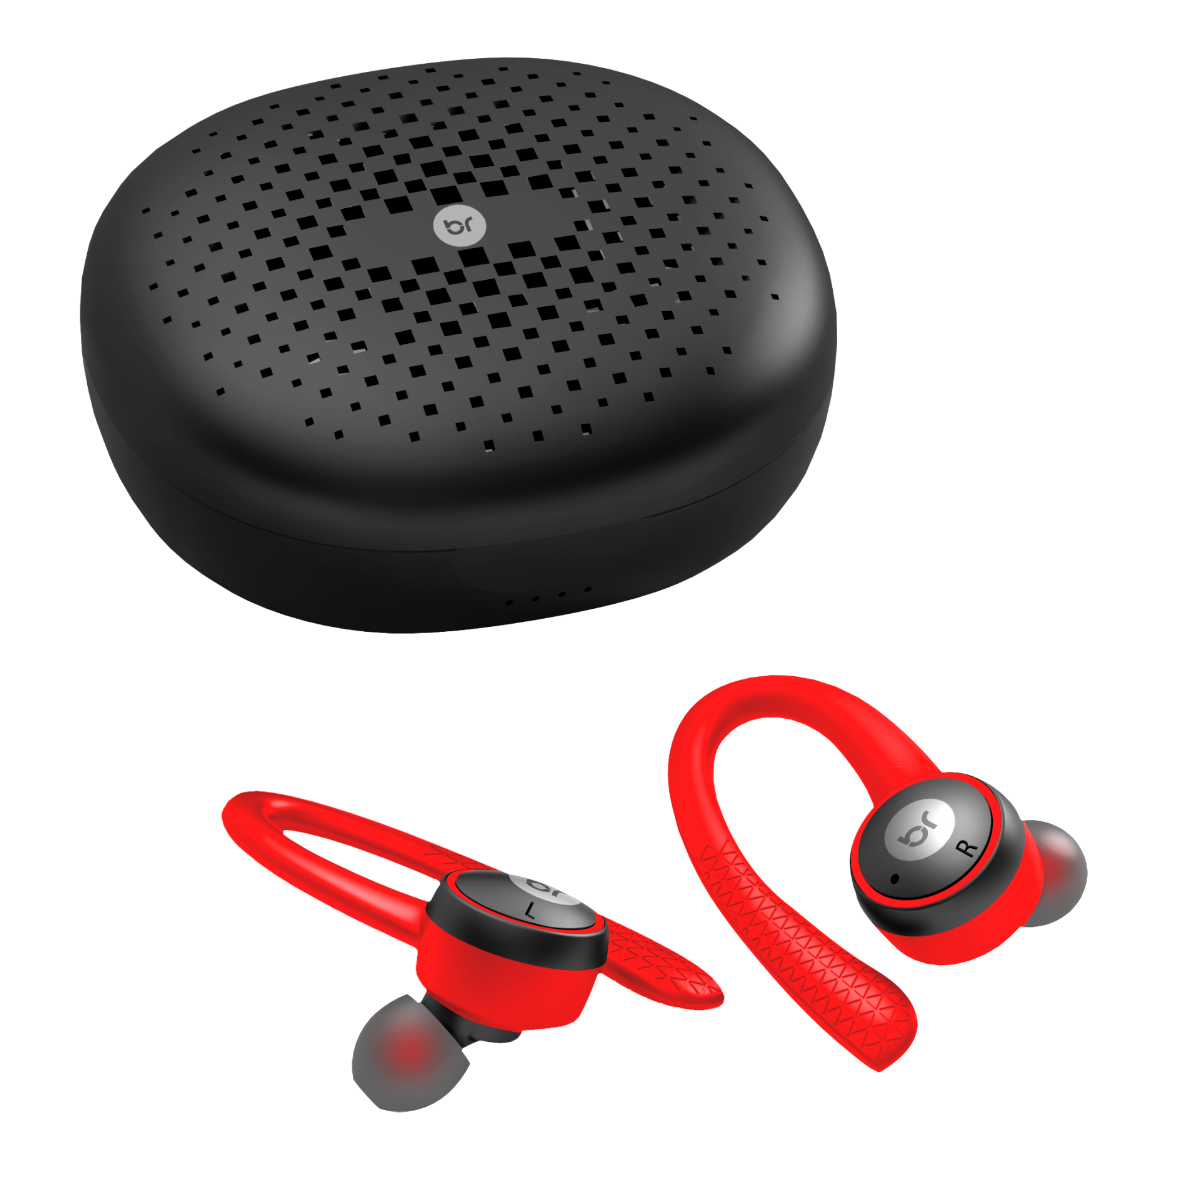 Fone de Ouvido Bluetooth Bright Fit - Case Carregador - Preto e Vermelho - FN557